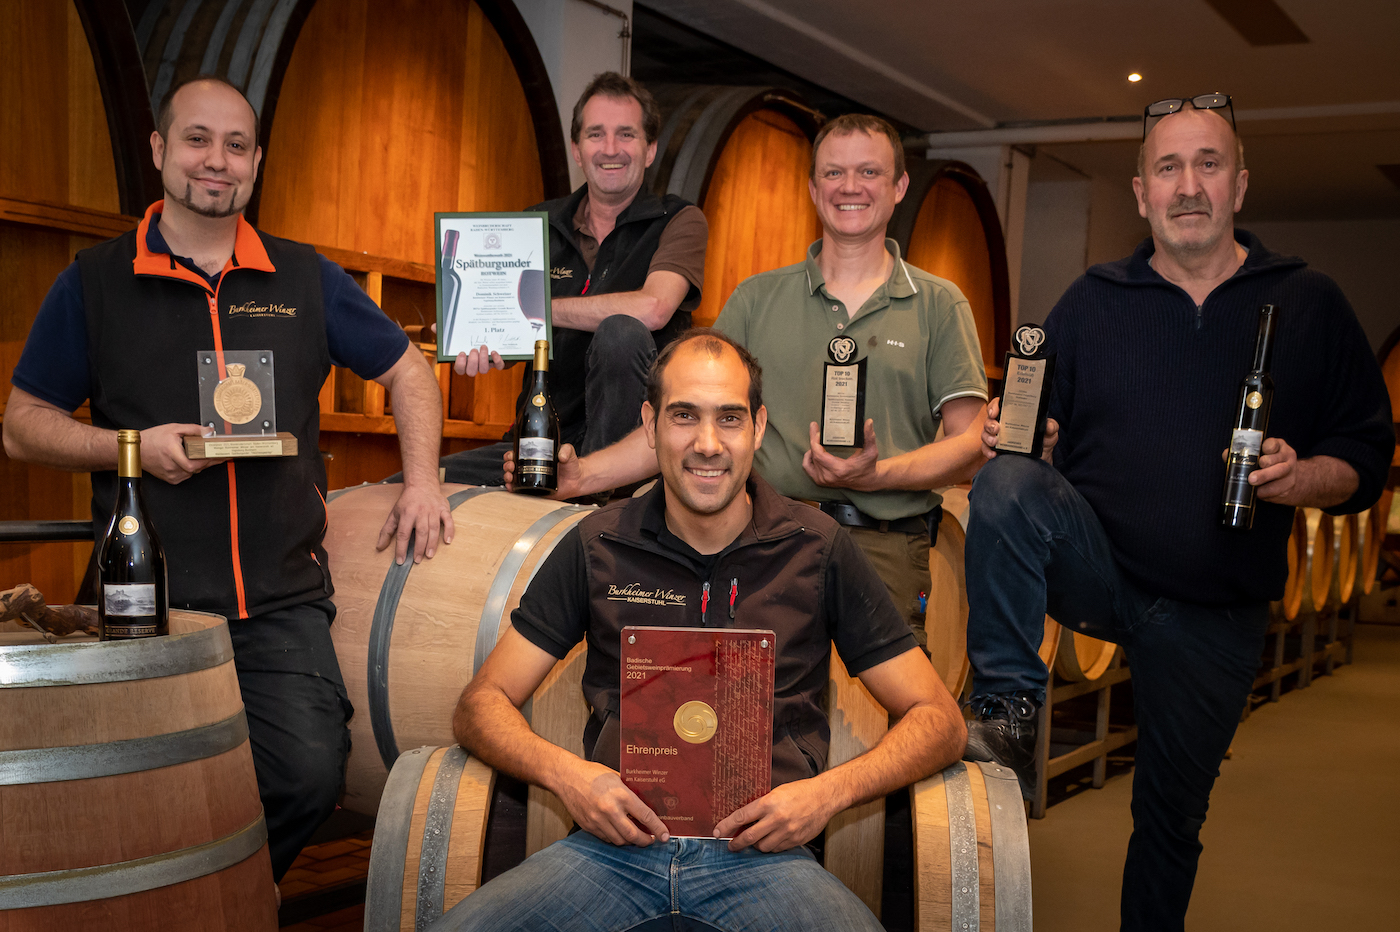 Fünf Männer stehen mit diversen Medaillen uns Auszeichnungen in einem Weinkeller vor großen Weinfässern und lachen stolz in die Kamera.